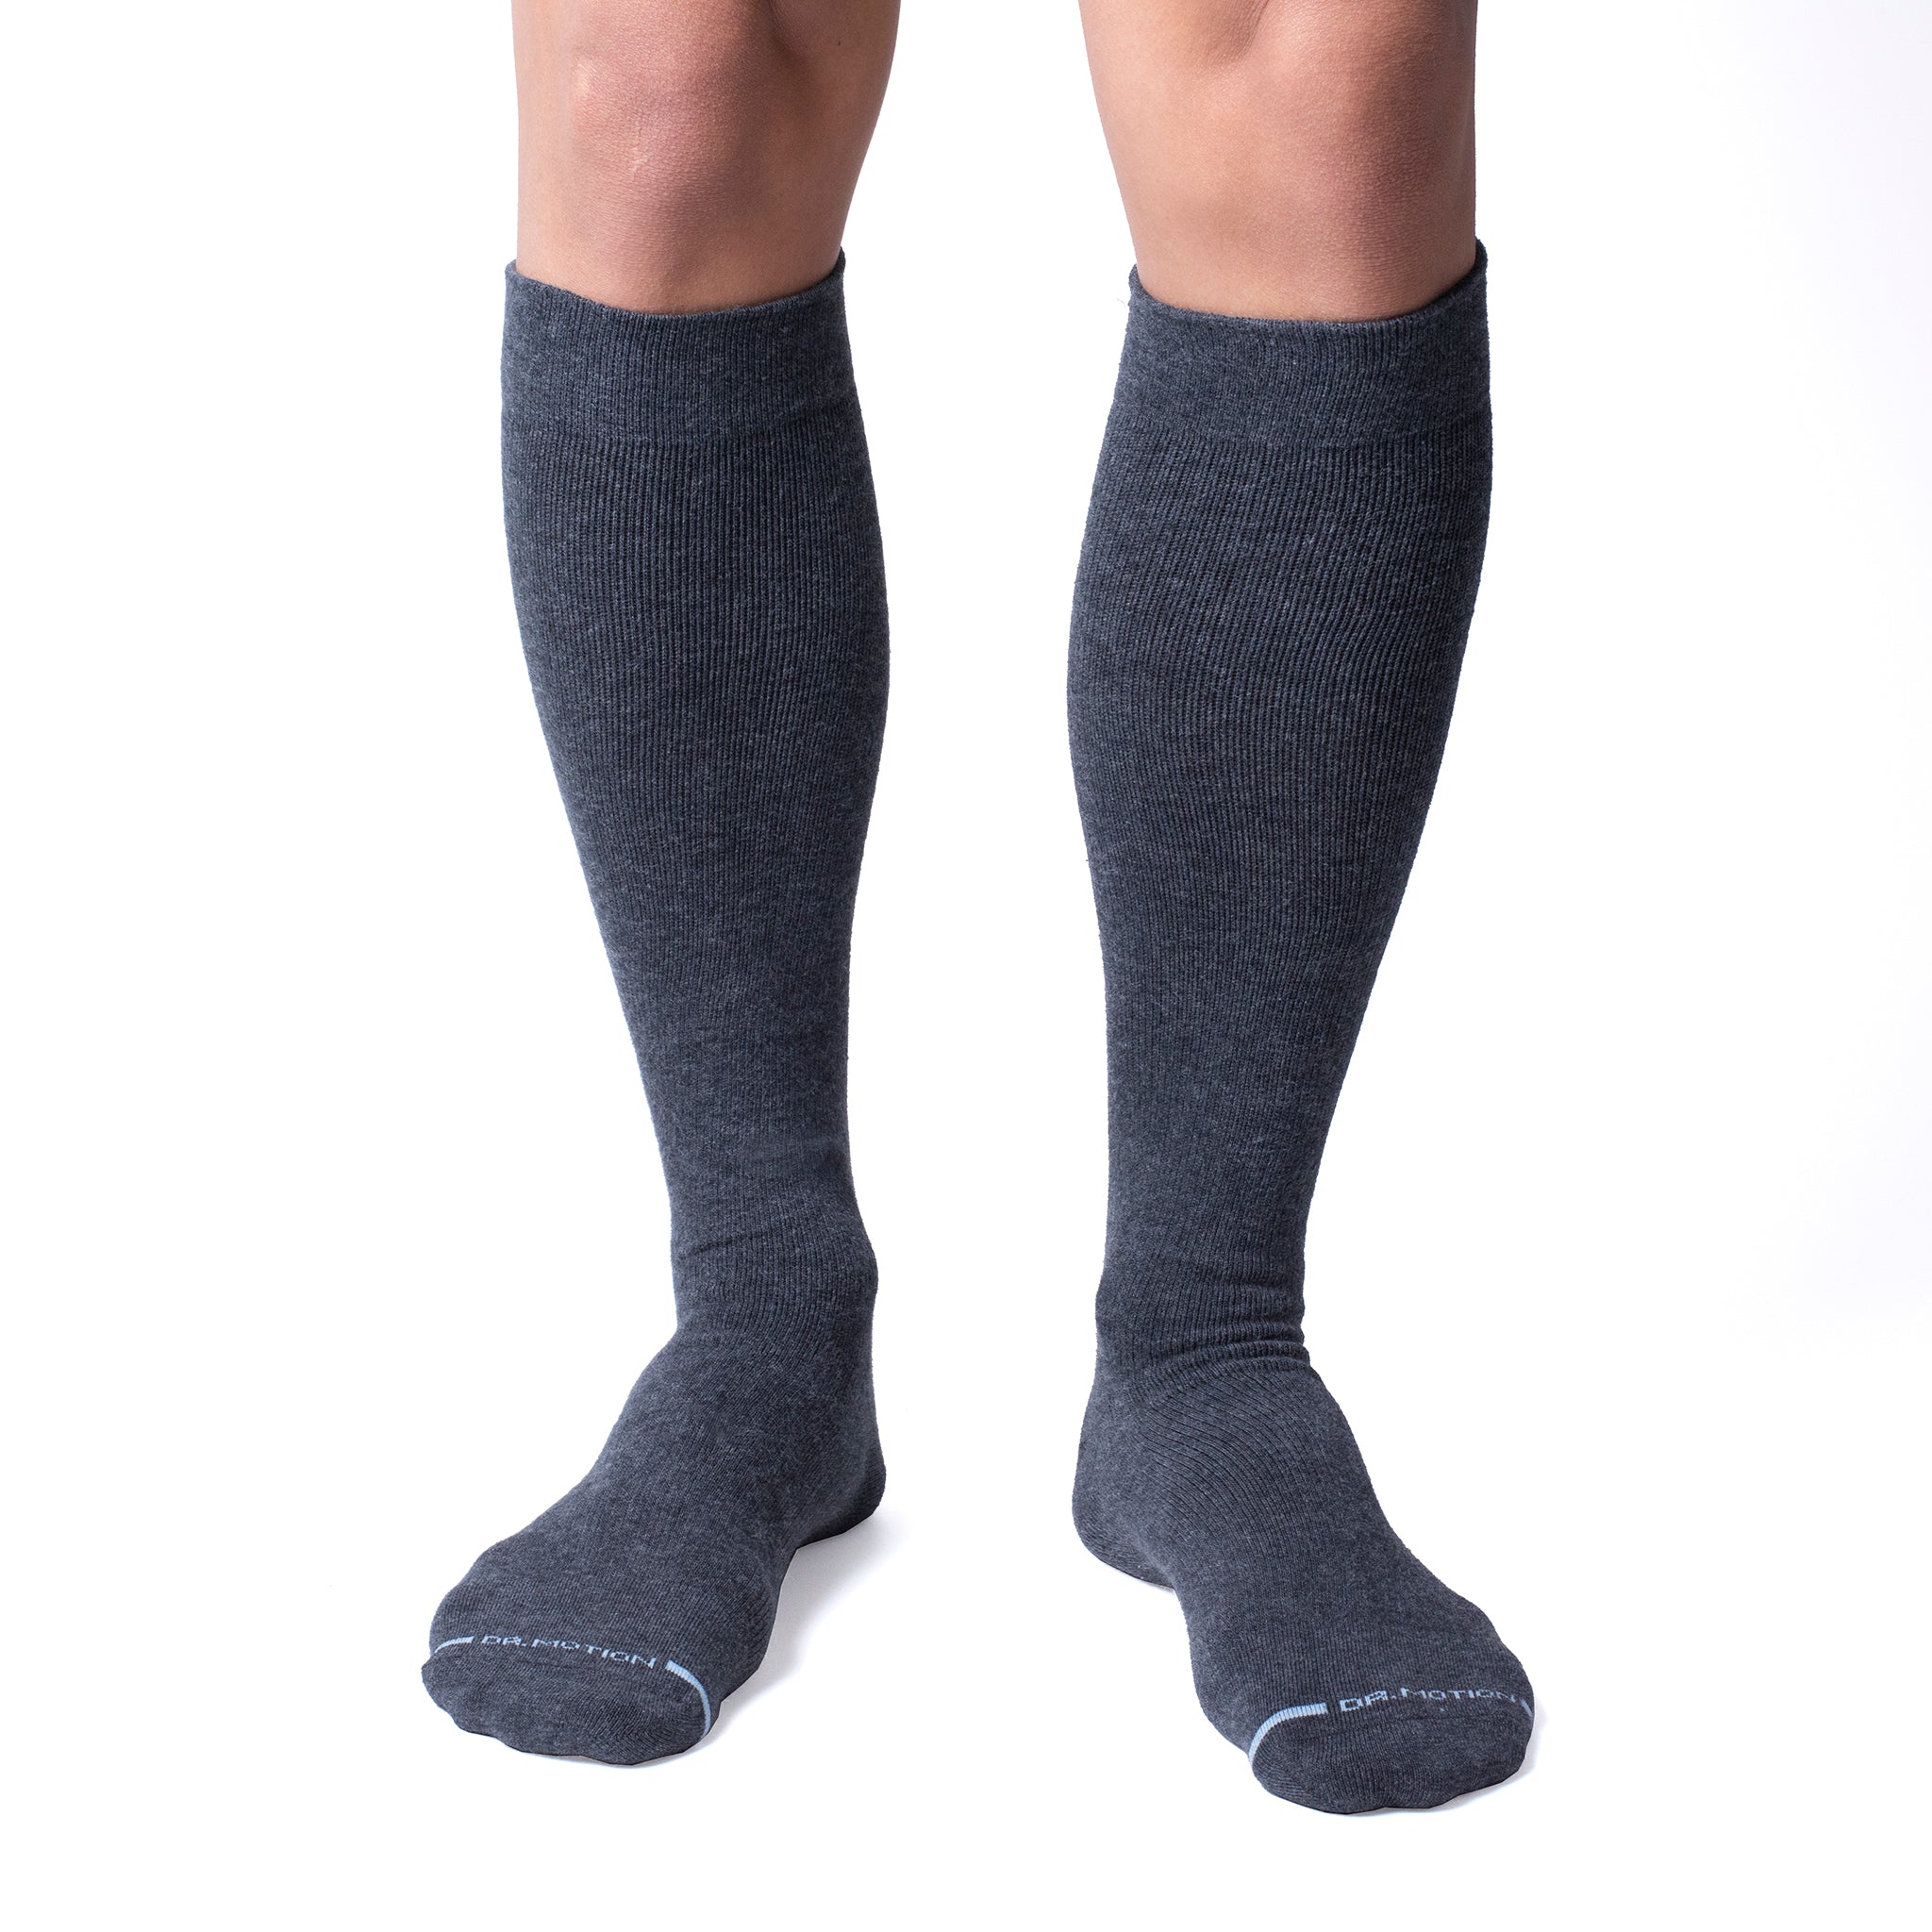 Solid Cotton Blend | Knee-High Compression Socks For Men